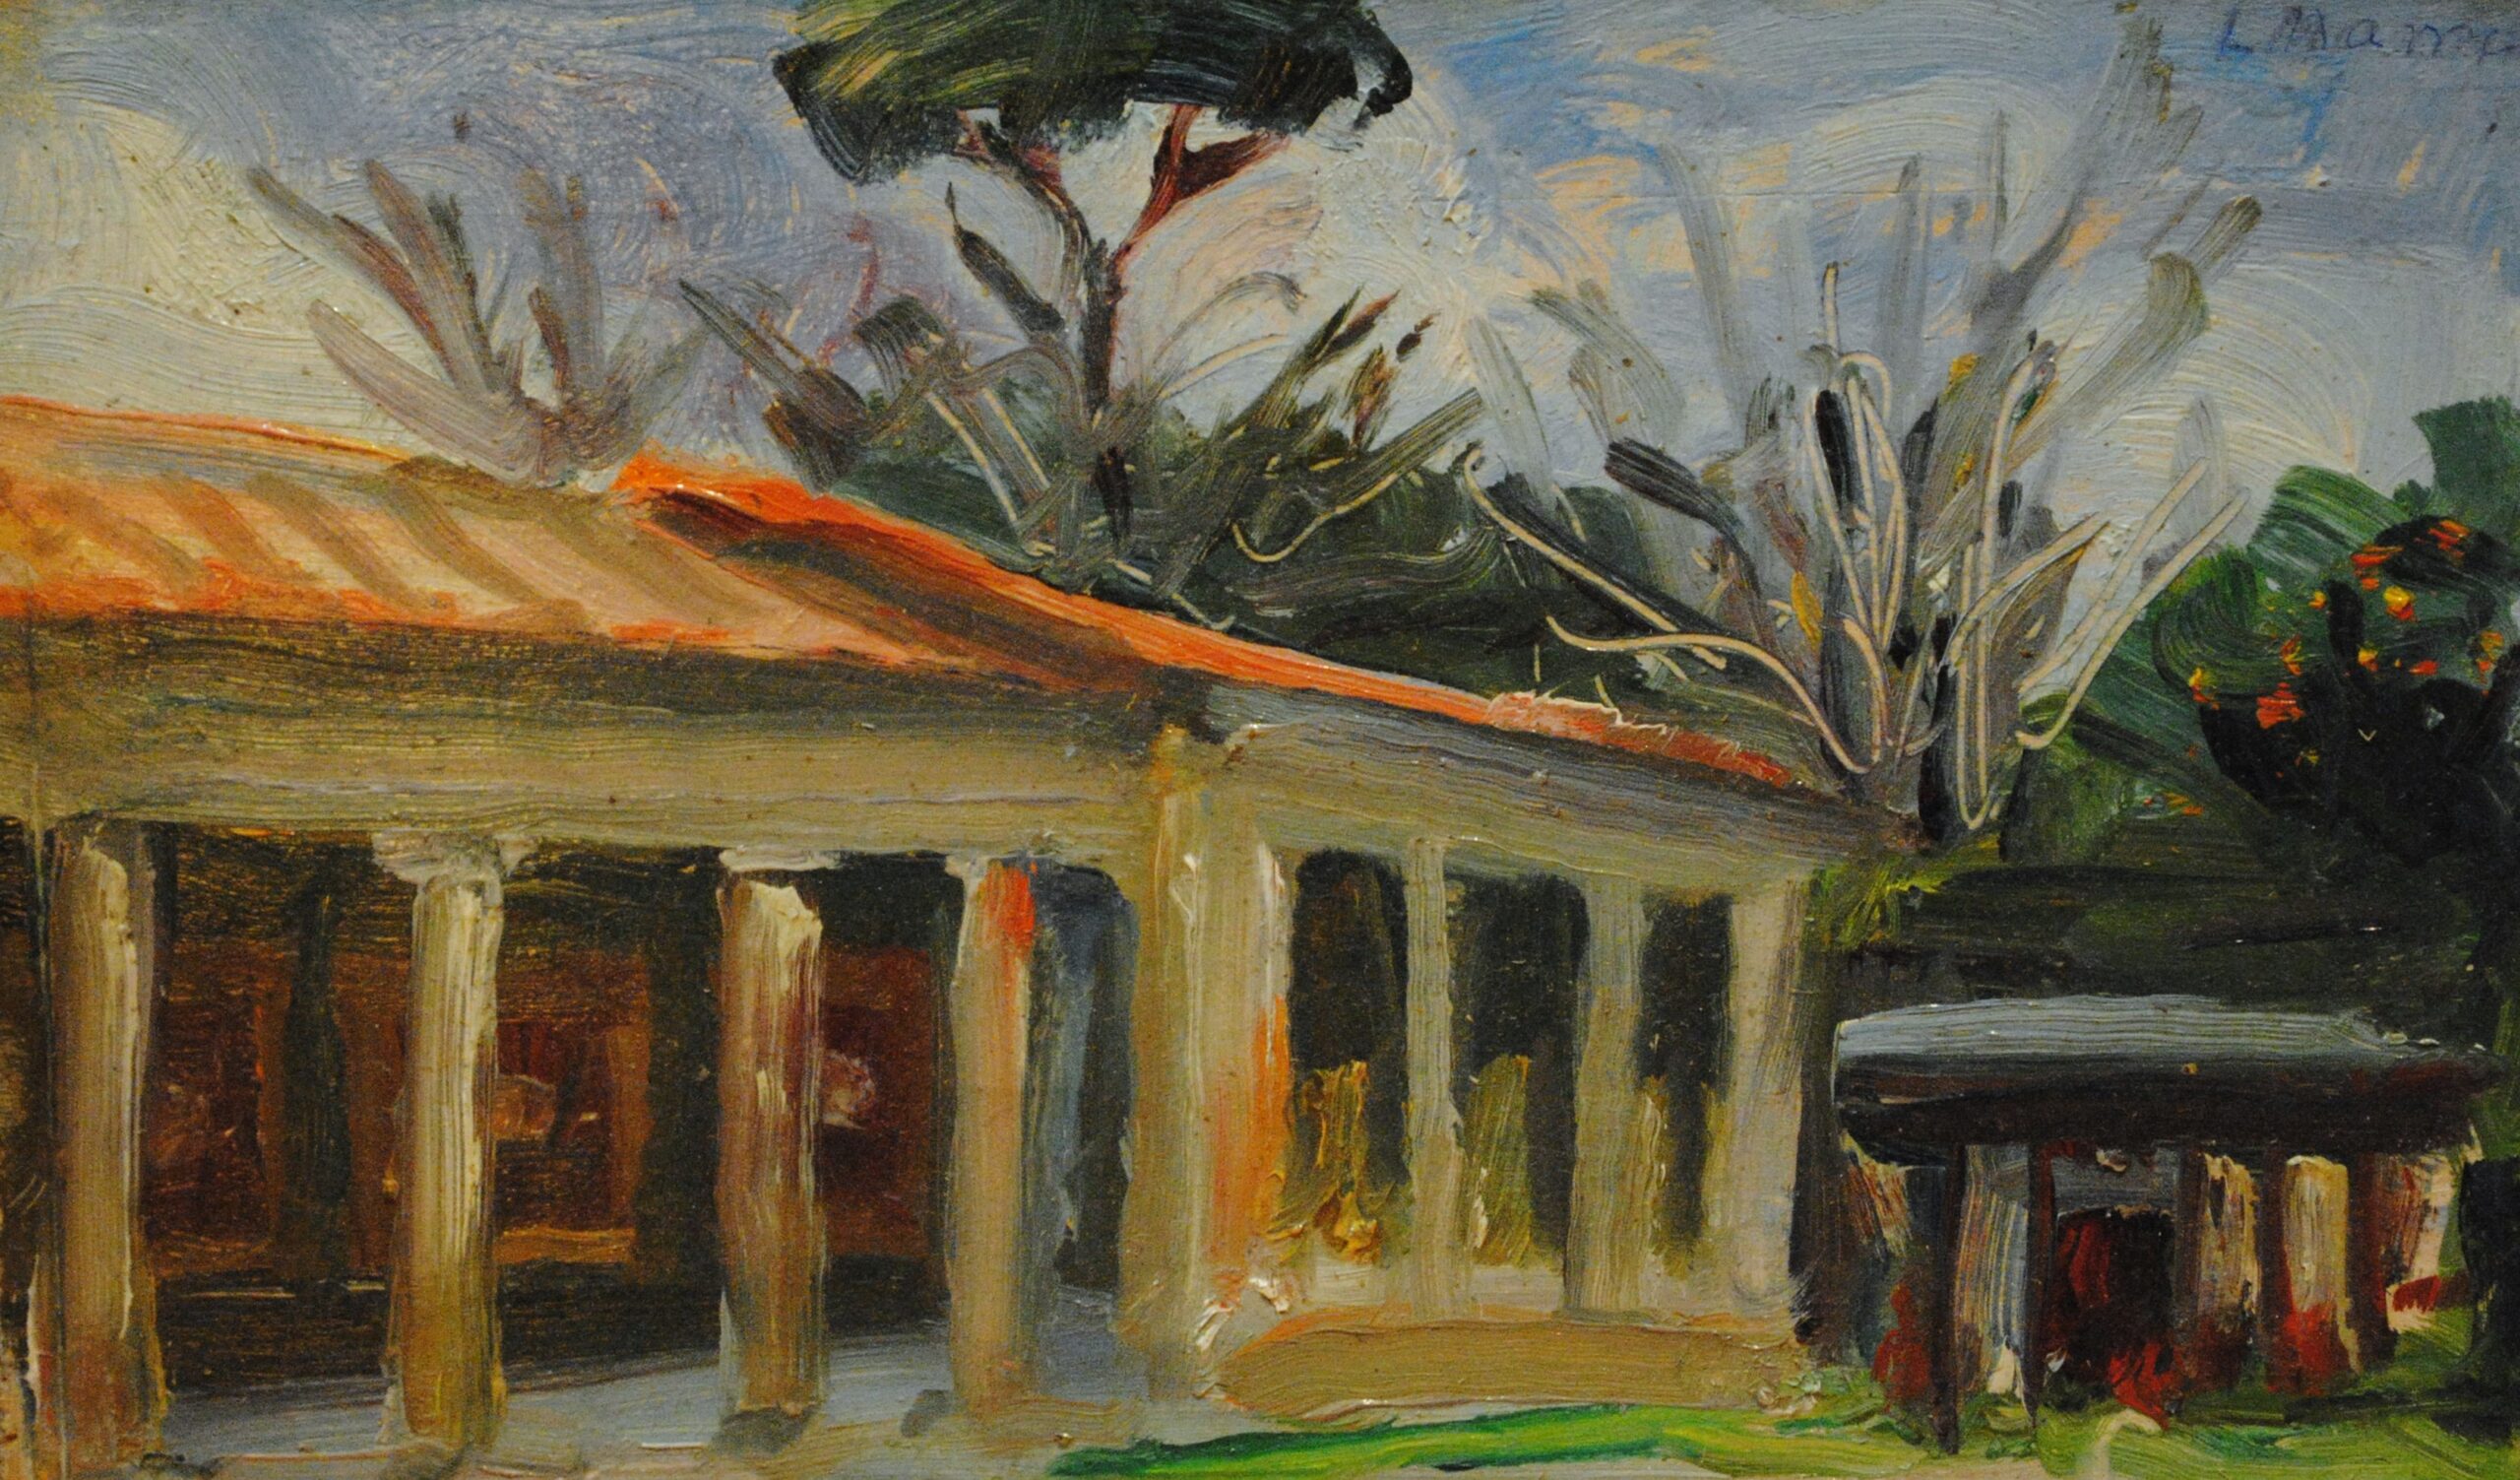 Pintura de José Manaut titulada Porche en granja, 1966. Óleo sobre tabla.